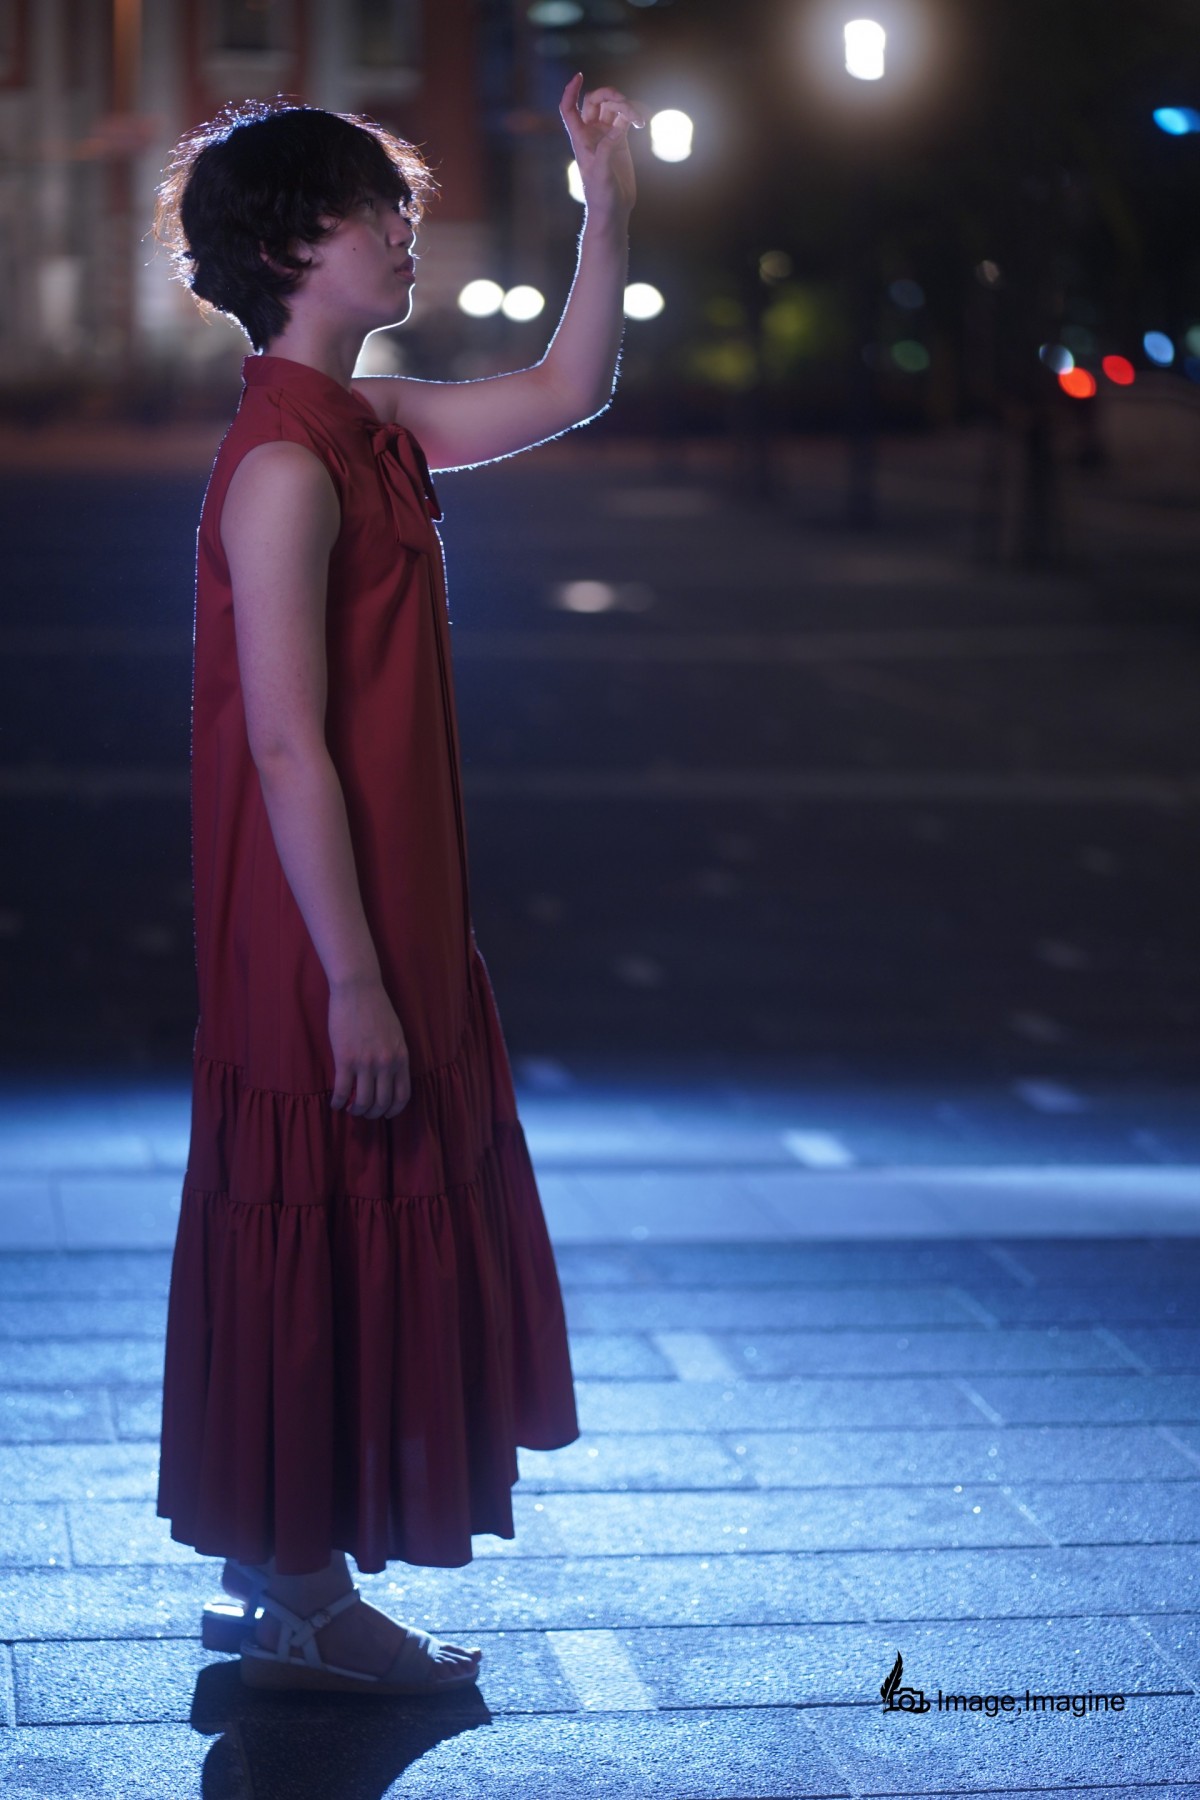 夜の街の中、赤いワンピースを着た女性を横から撮影した写真。女性は左手を空の方へ伸ばし、何かを掴もうとしている。